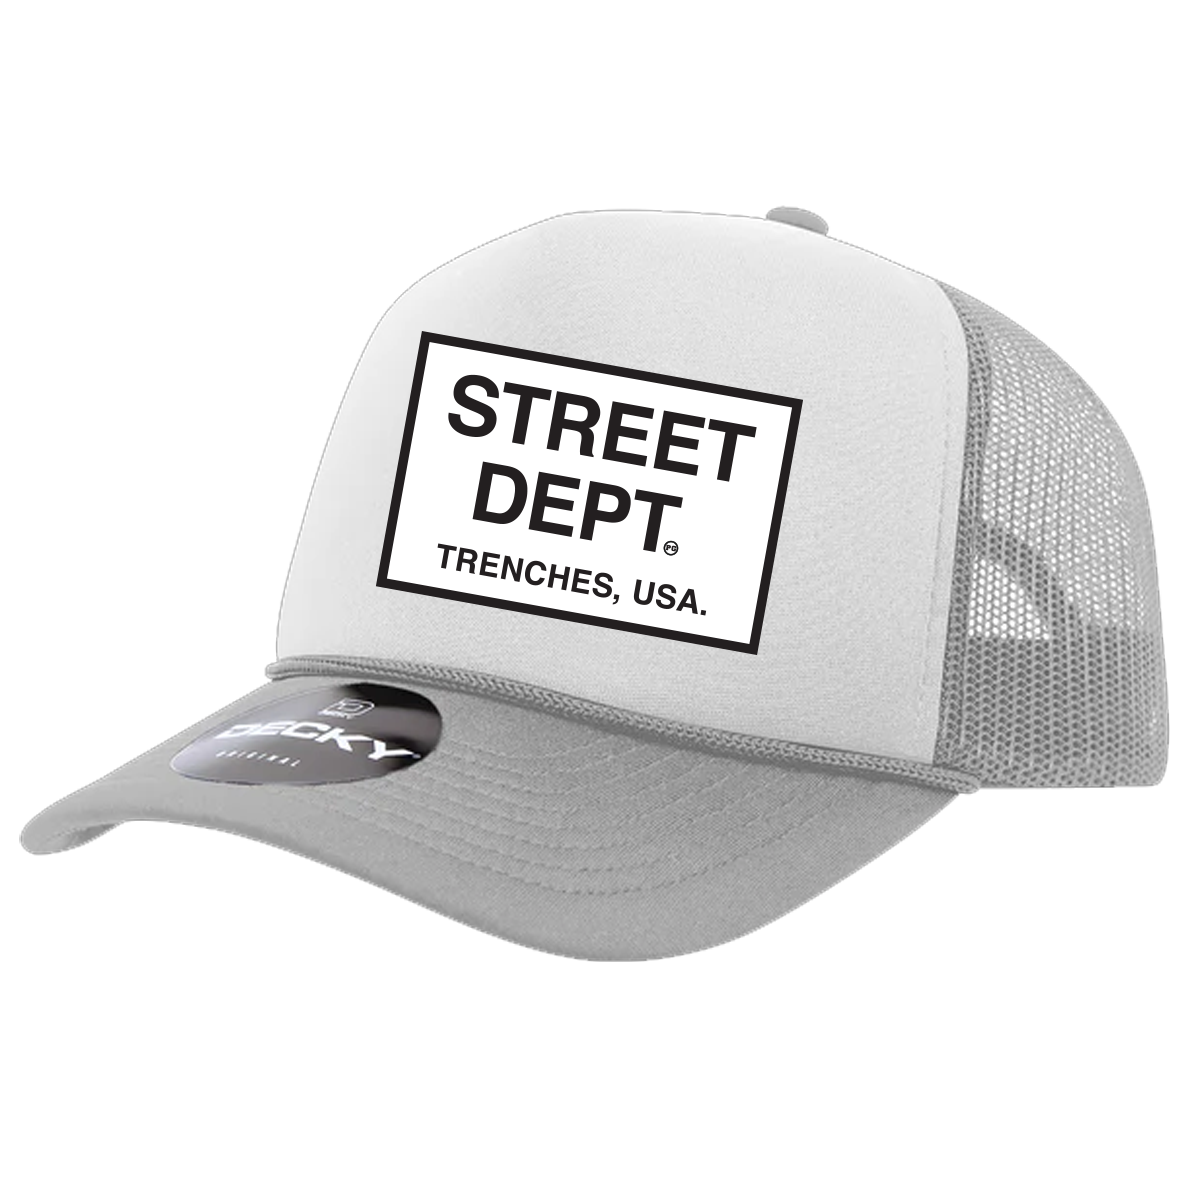 Street Dept Trucker Hat - White/Gray